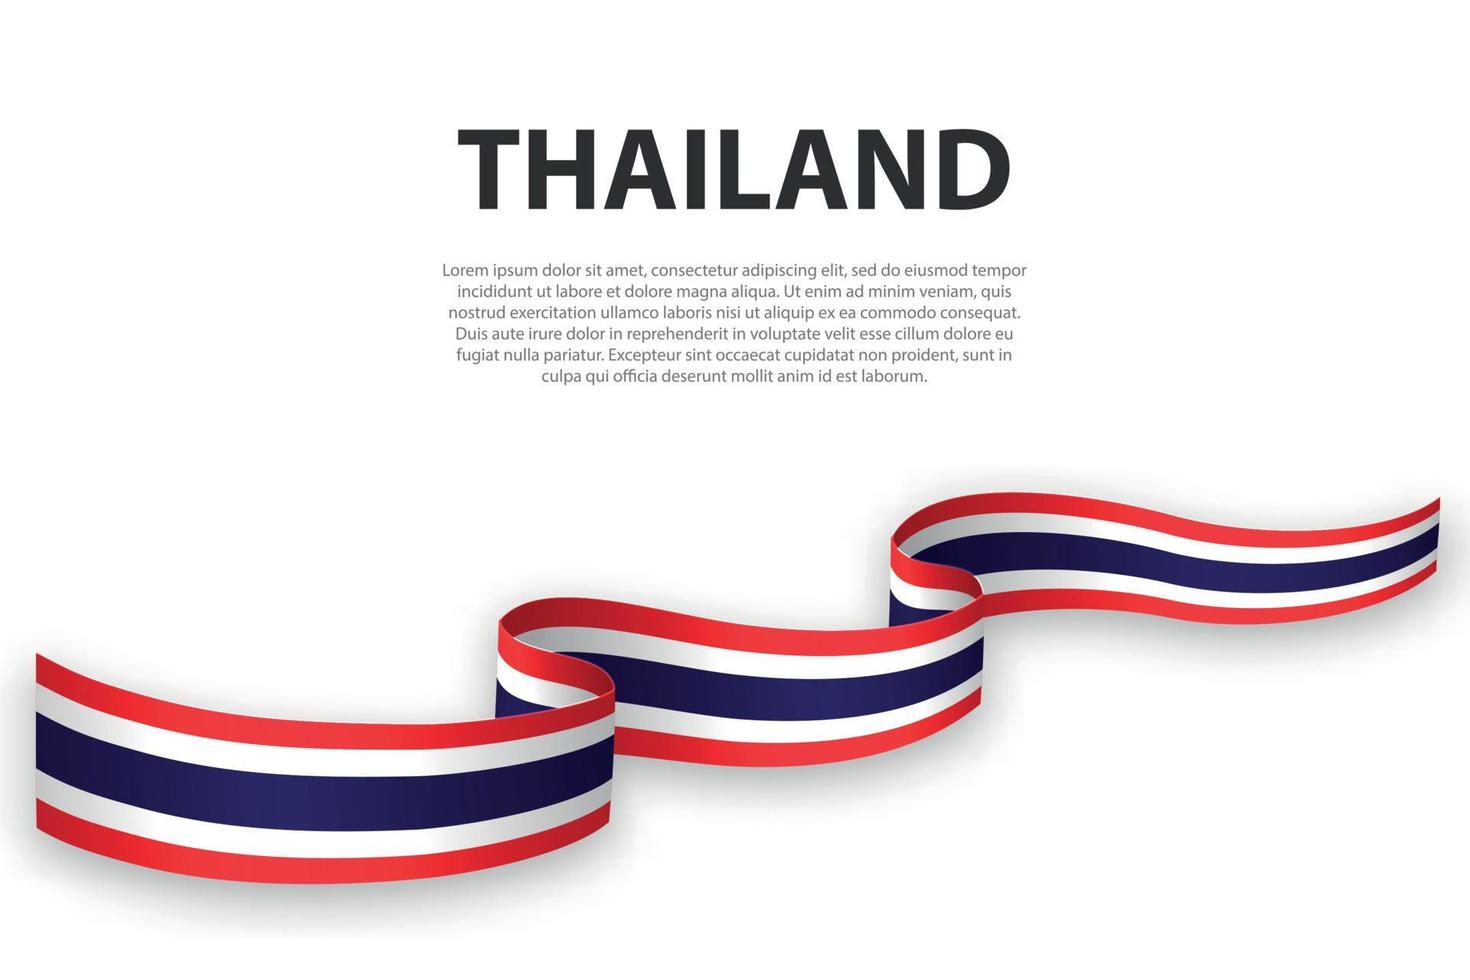 sventolando il nastro o lo striscione con la bandiera della thailandia vettore